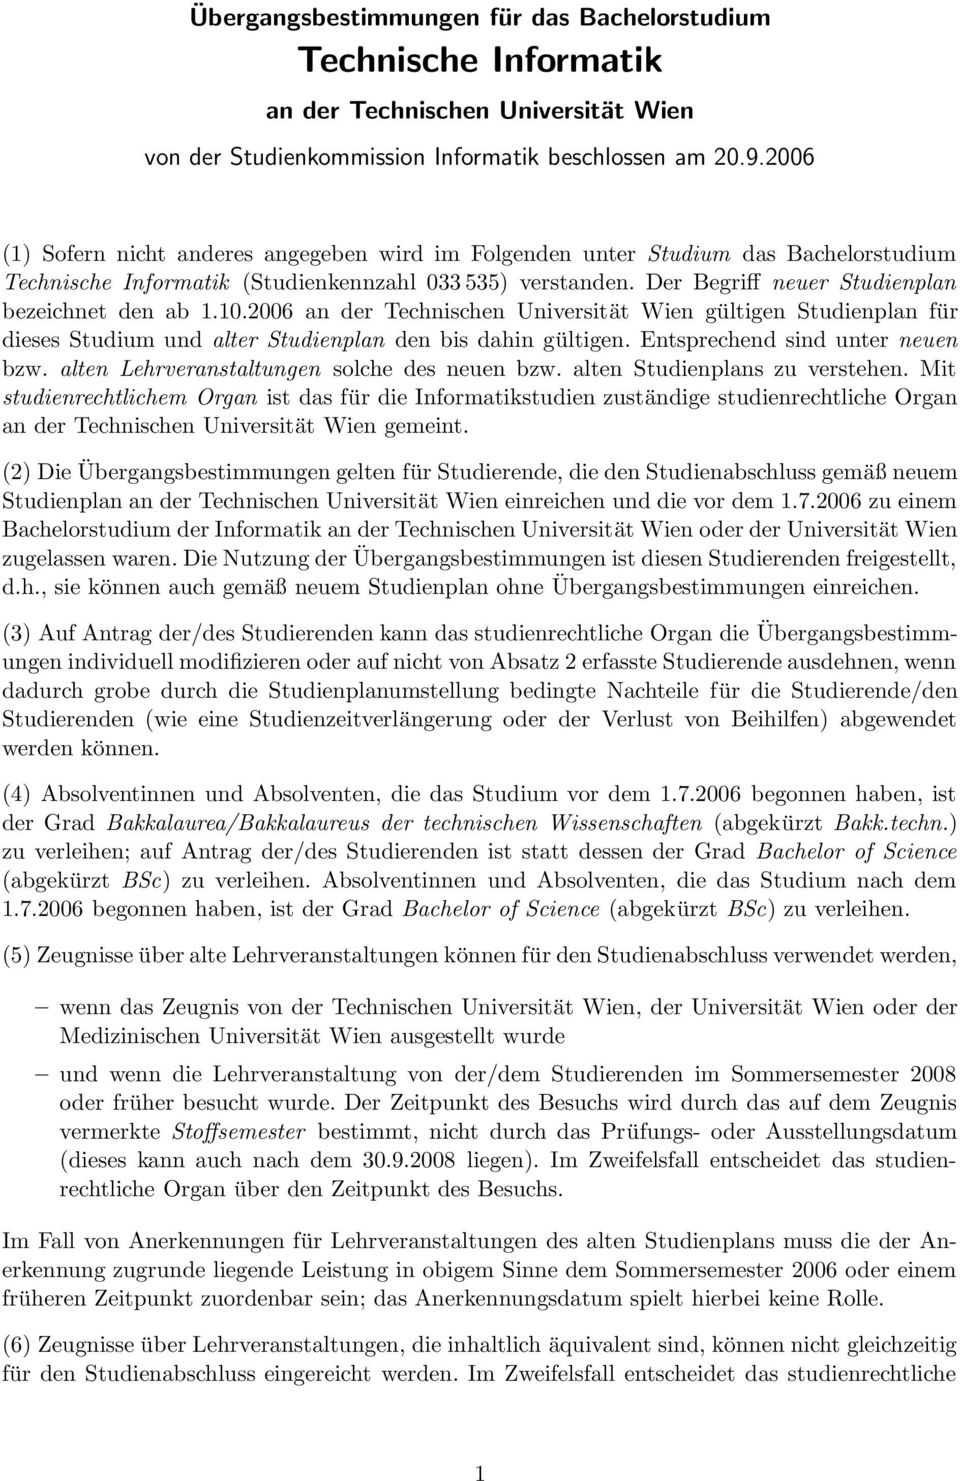 Der Begriff neuer Studienplan bezeichnet den ab 1.10.2006 an der Technischen Universität Wien gültigen Studienplan für dieses Studium und alter Studienplan den bis dahin gültigen.